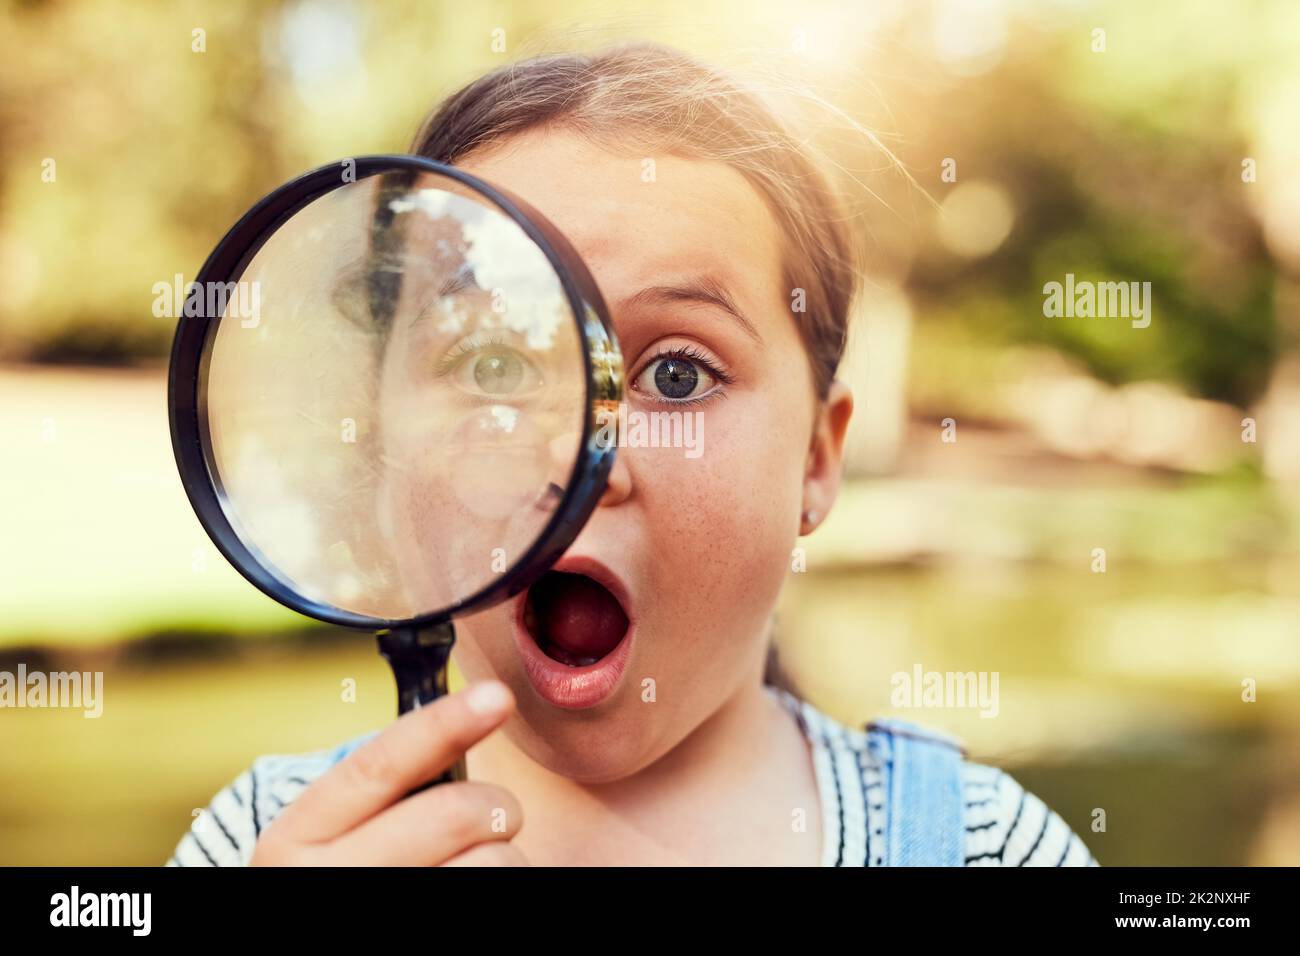 Neugierig auf die Welt. Porträt eines kleinen Mädchens, das erstaunt durch eine Lupe schaut. Stockfoto